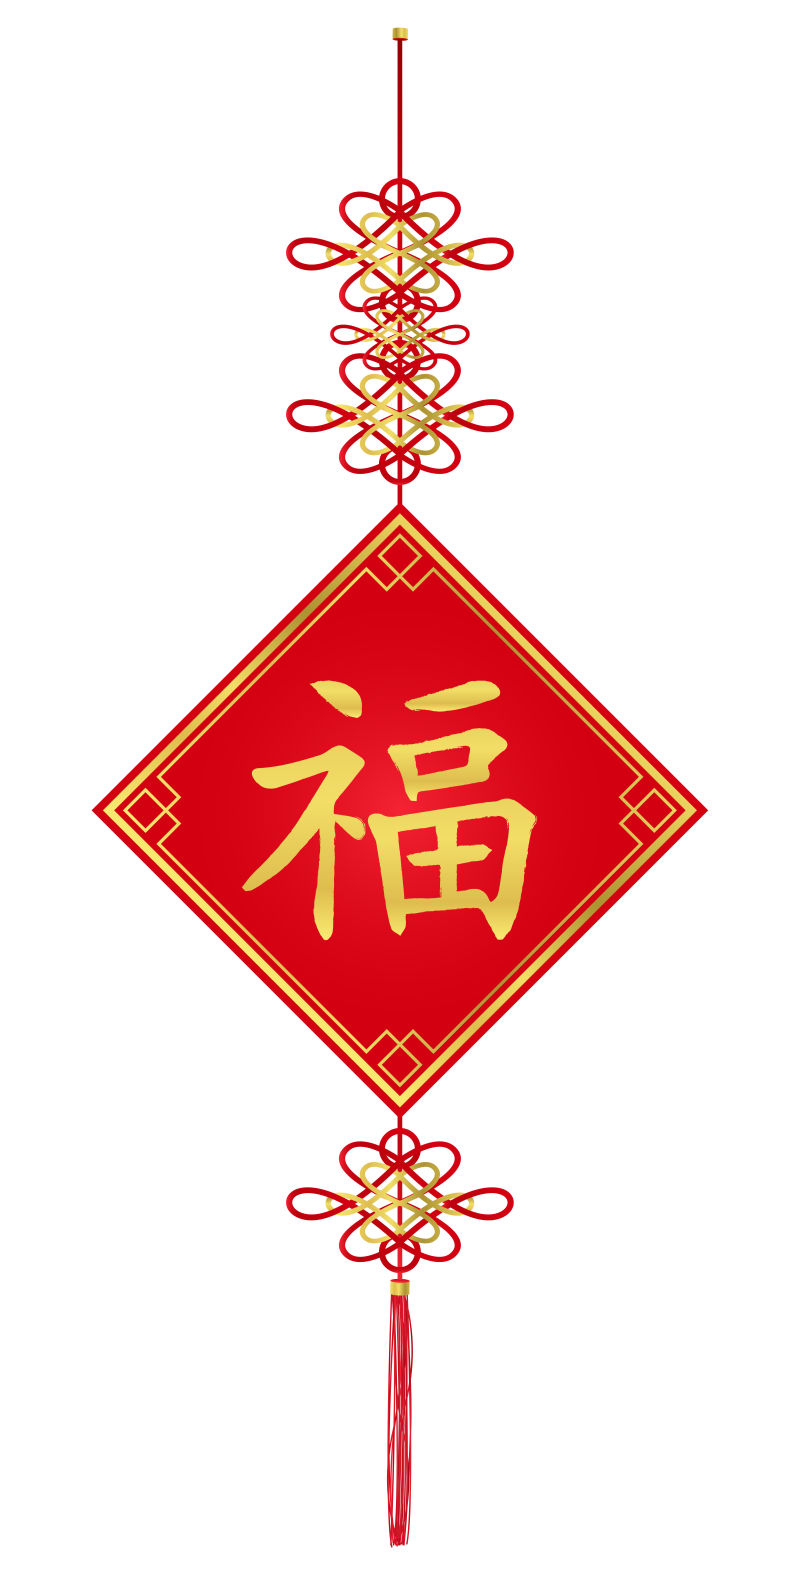 白色背景下带有中国结的福字汉字背景